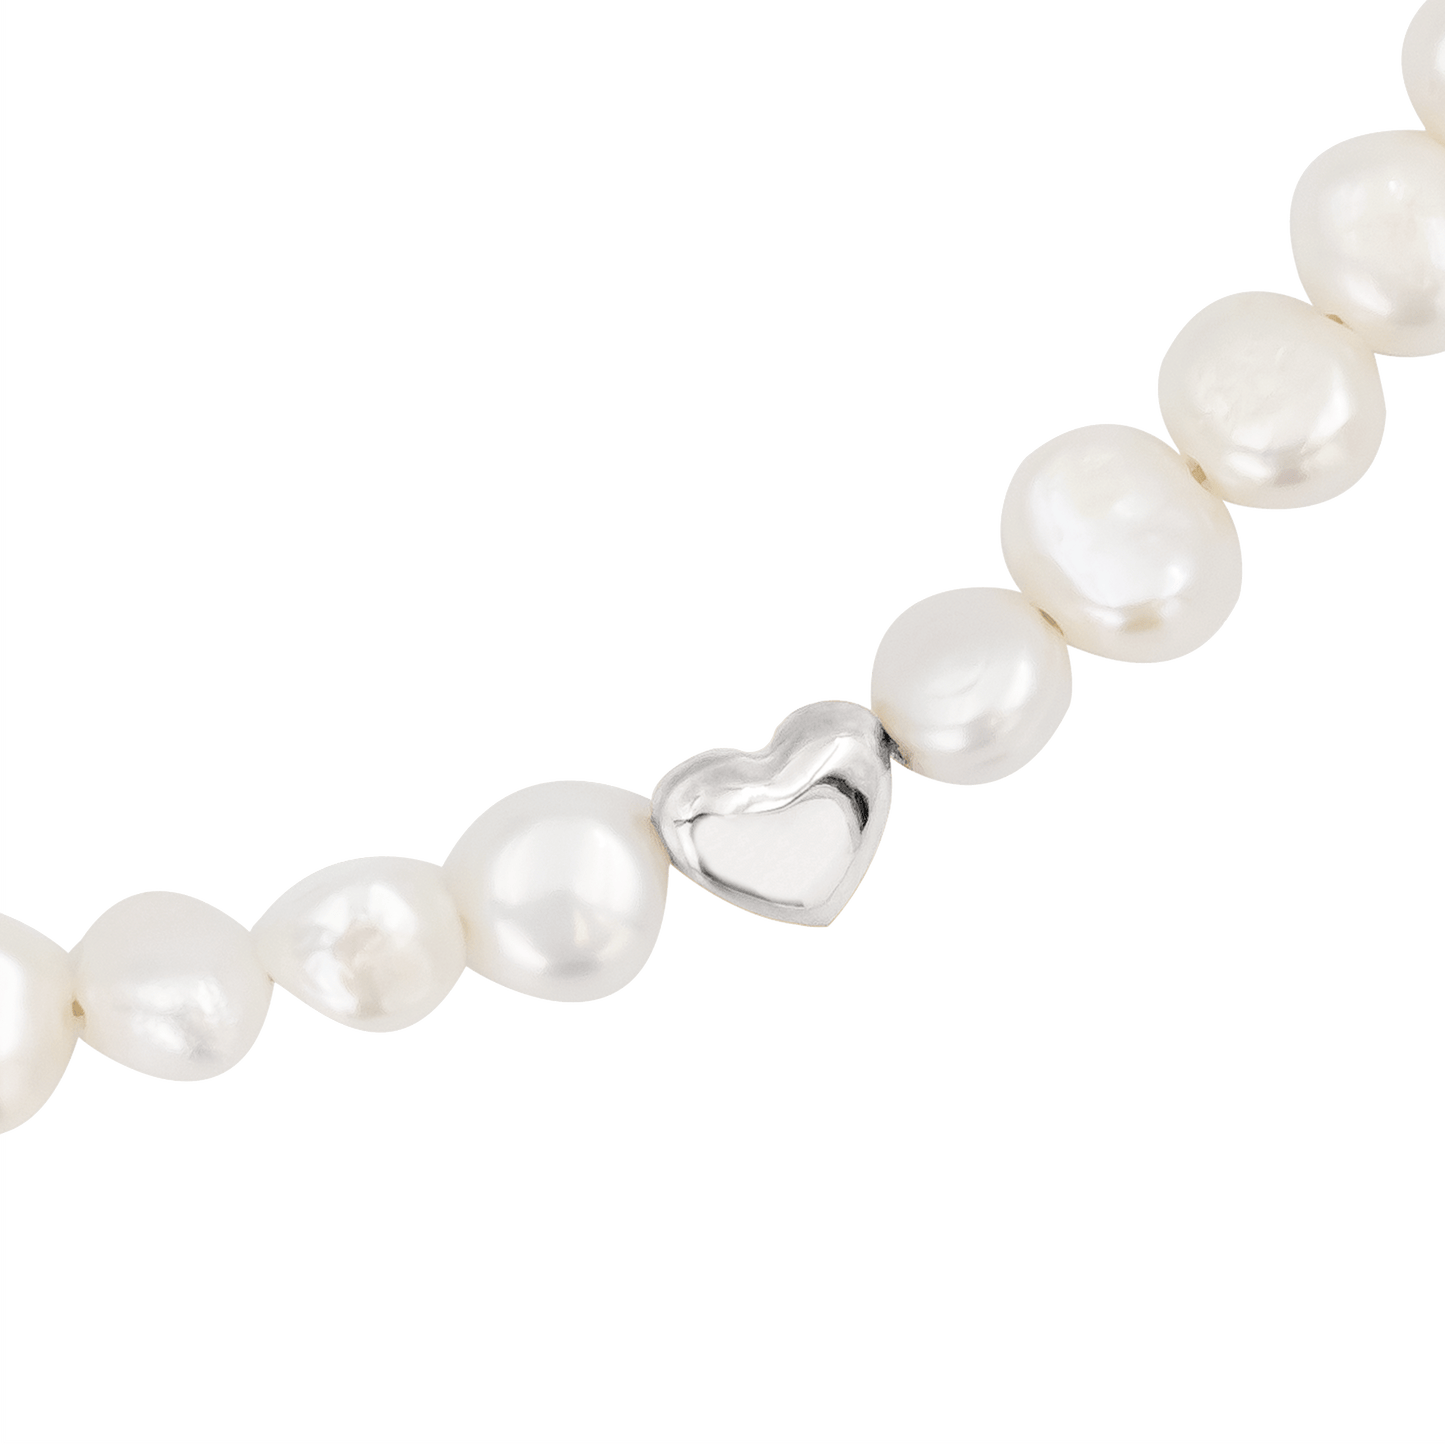 Retro Love Pearl Necklace Silber